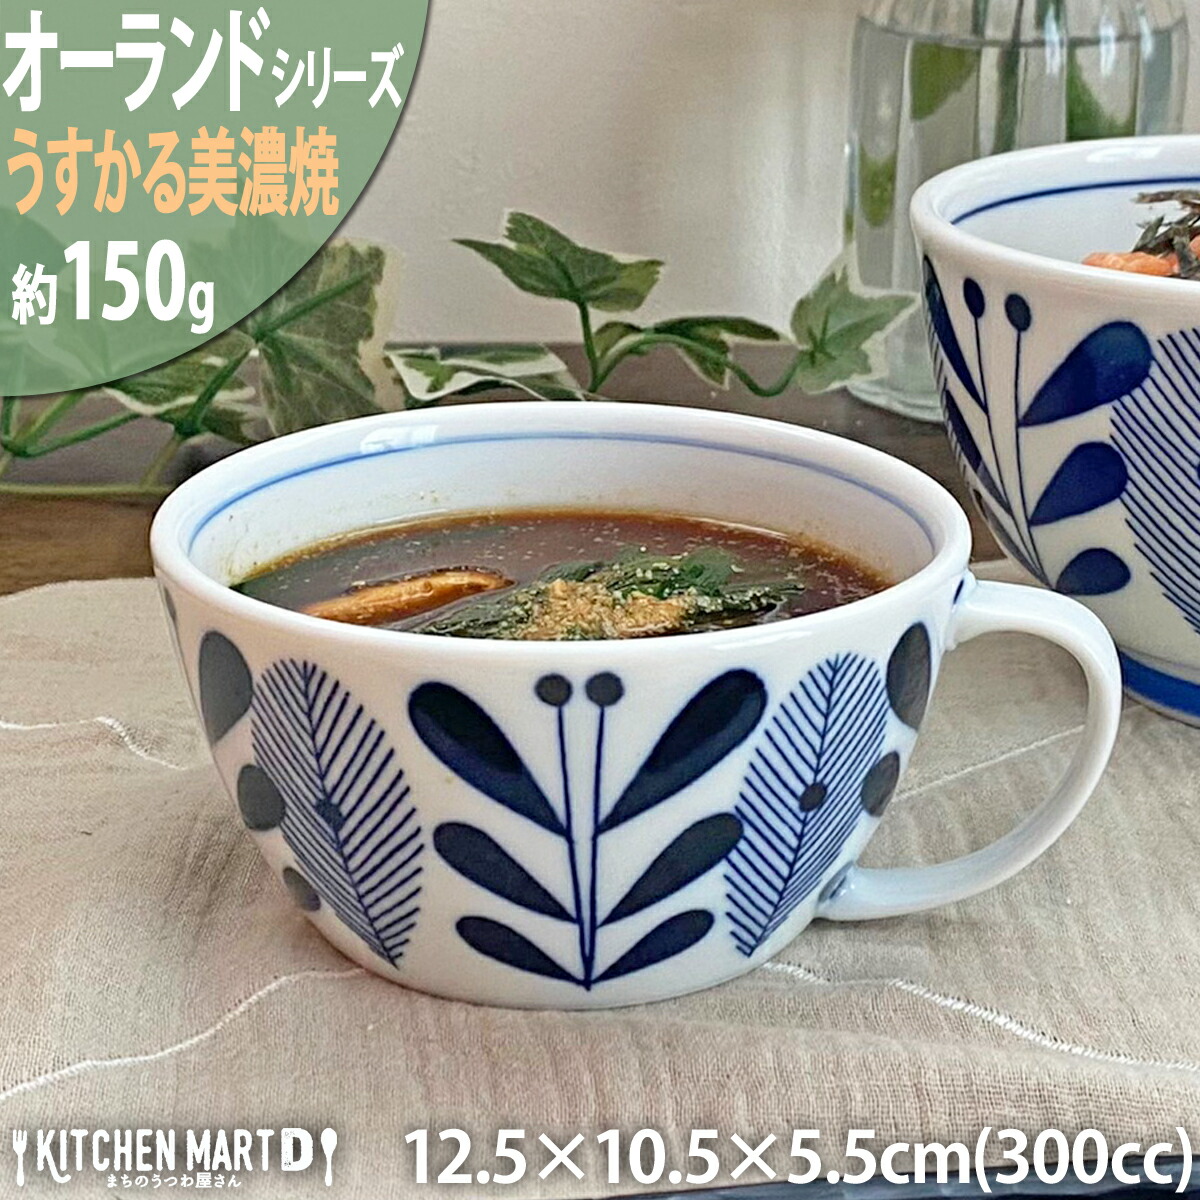 オーランド うすかる スープカップ 300cc 美濃焼 国産 日本製 陶器 軽い 軽量 食器 食洗機対応 カフェ 北欧風 北欧 北欧食器 ラッピング不可